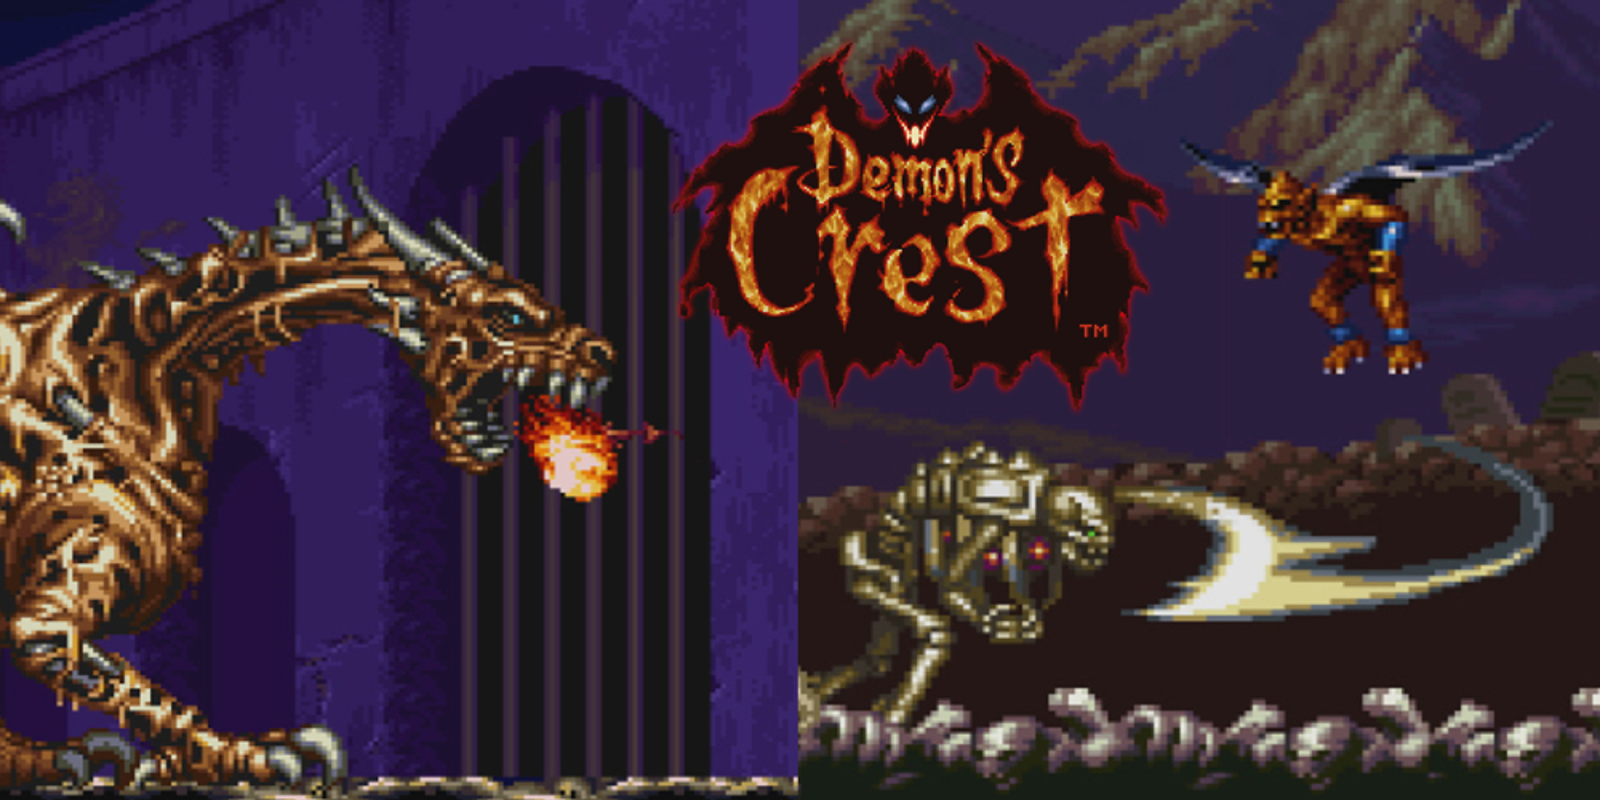 Resultado de imagen para demon's crest